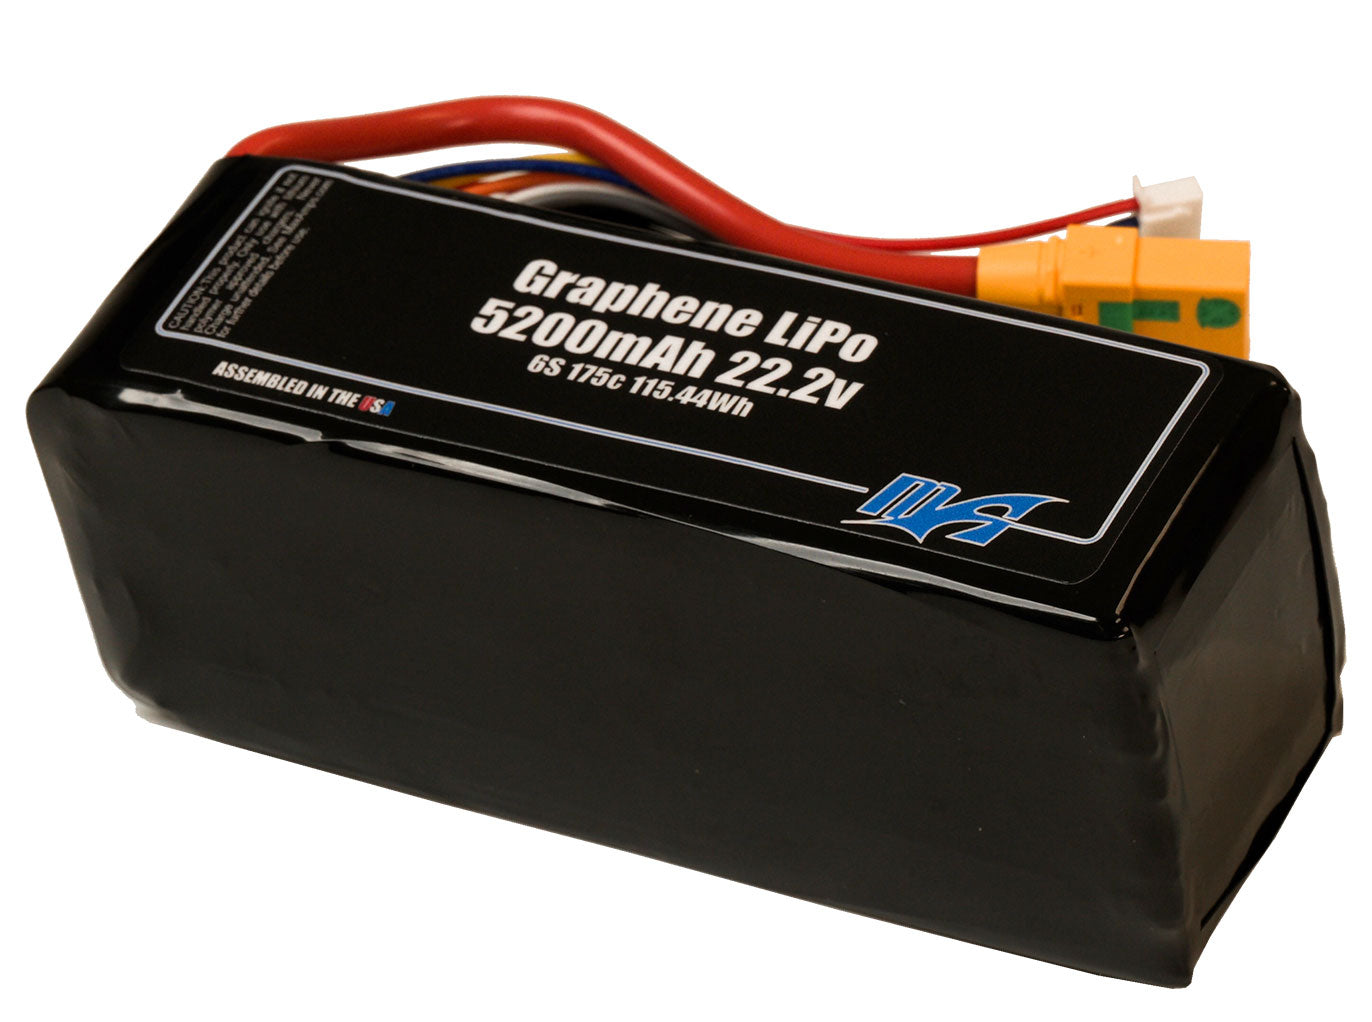 Graphene LiPo 5200 6S 22.2v Smart Battery Pack With XT90 Anti-Spark Female